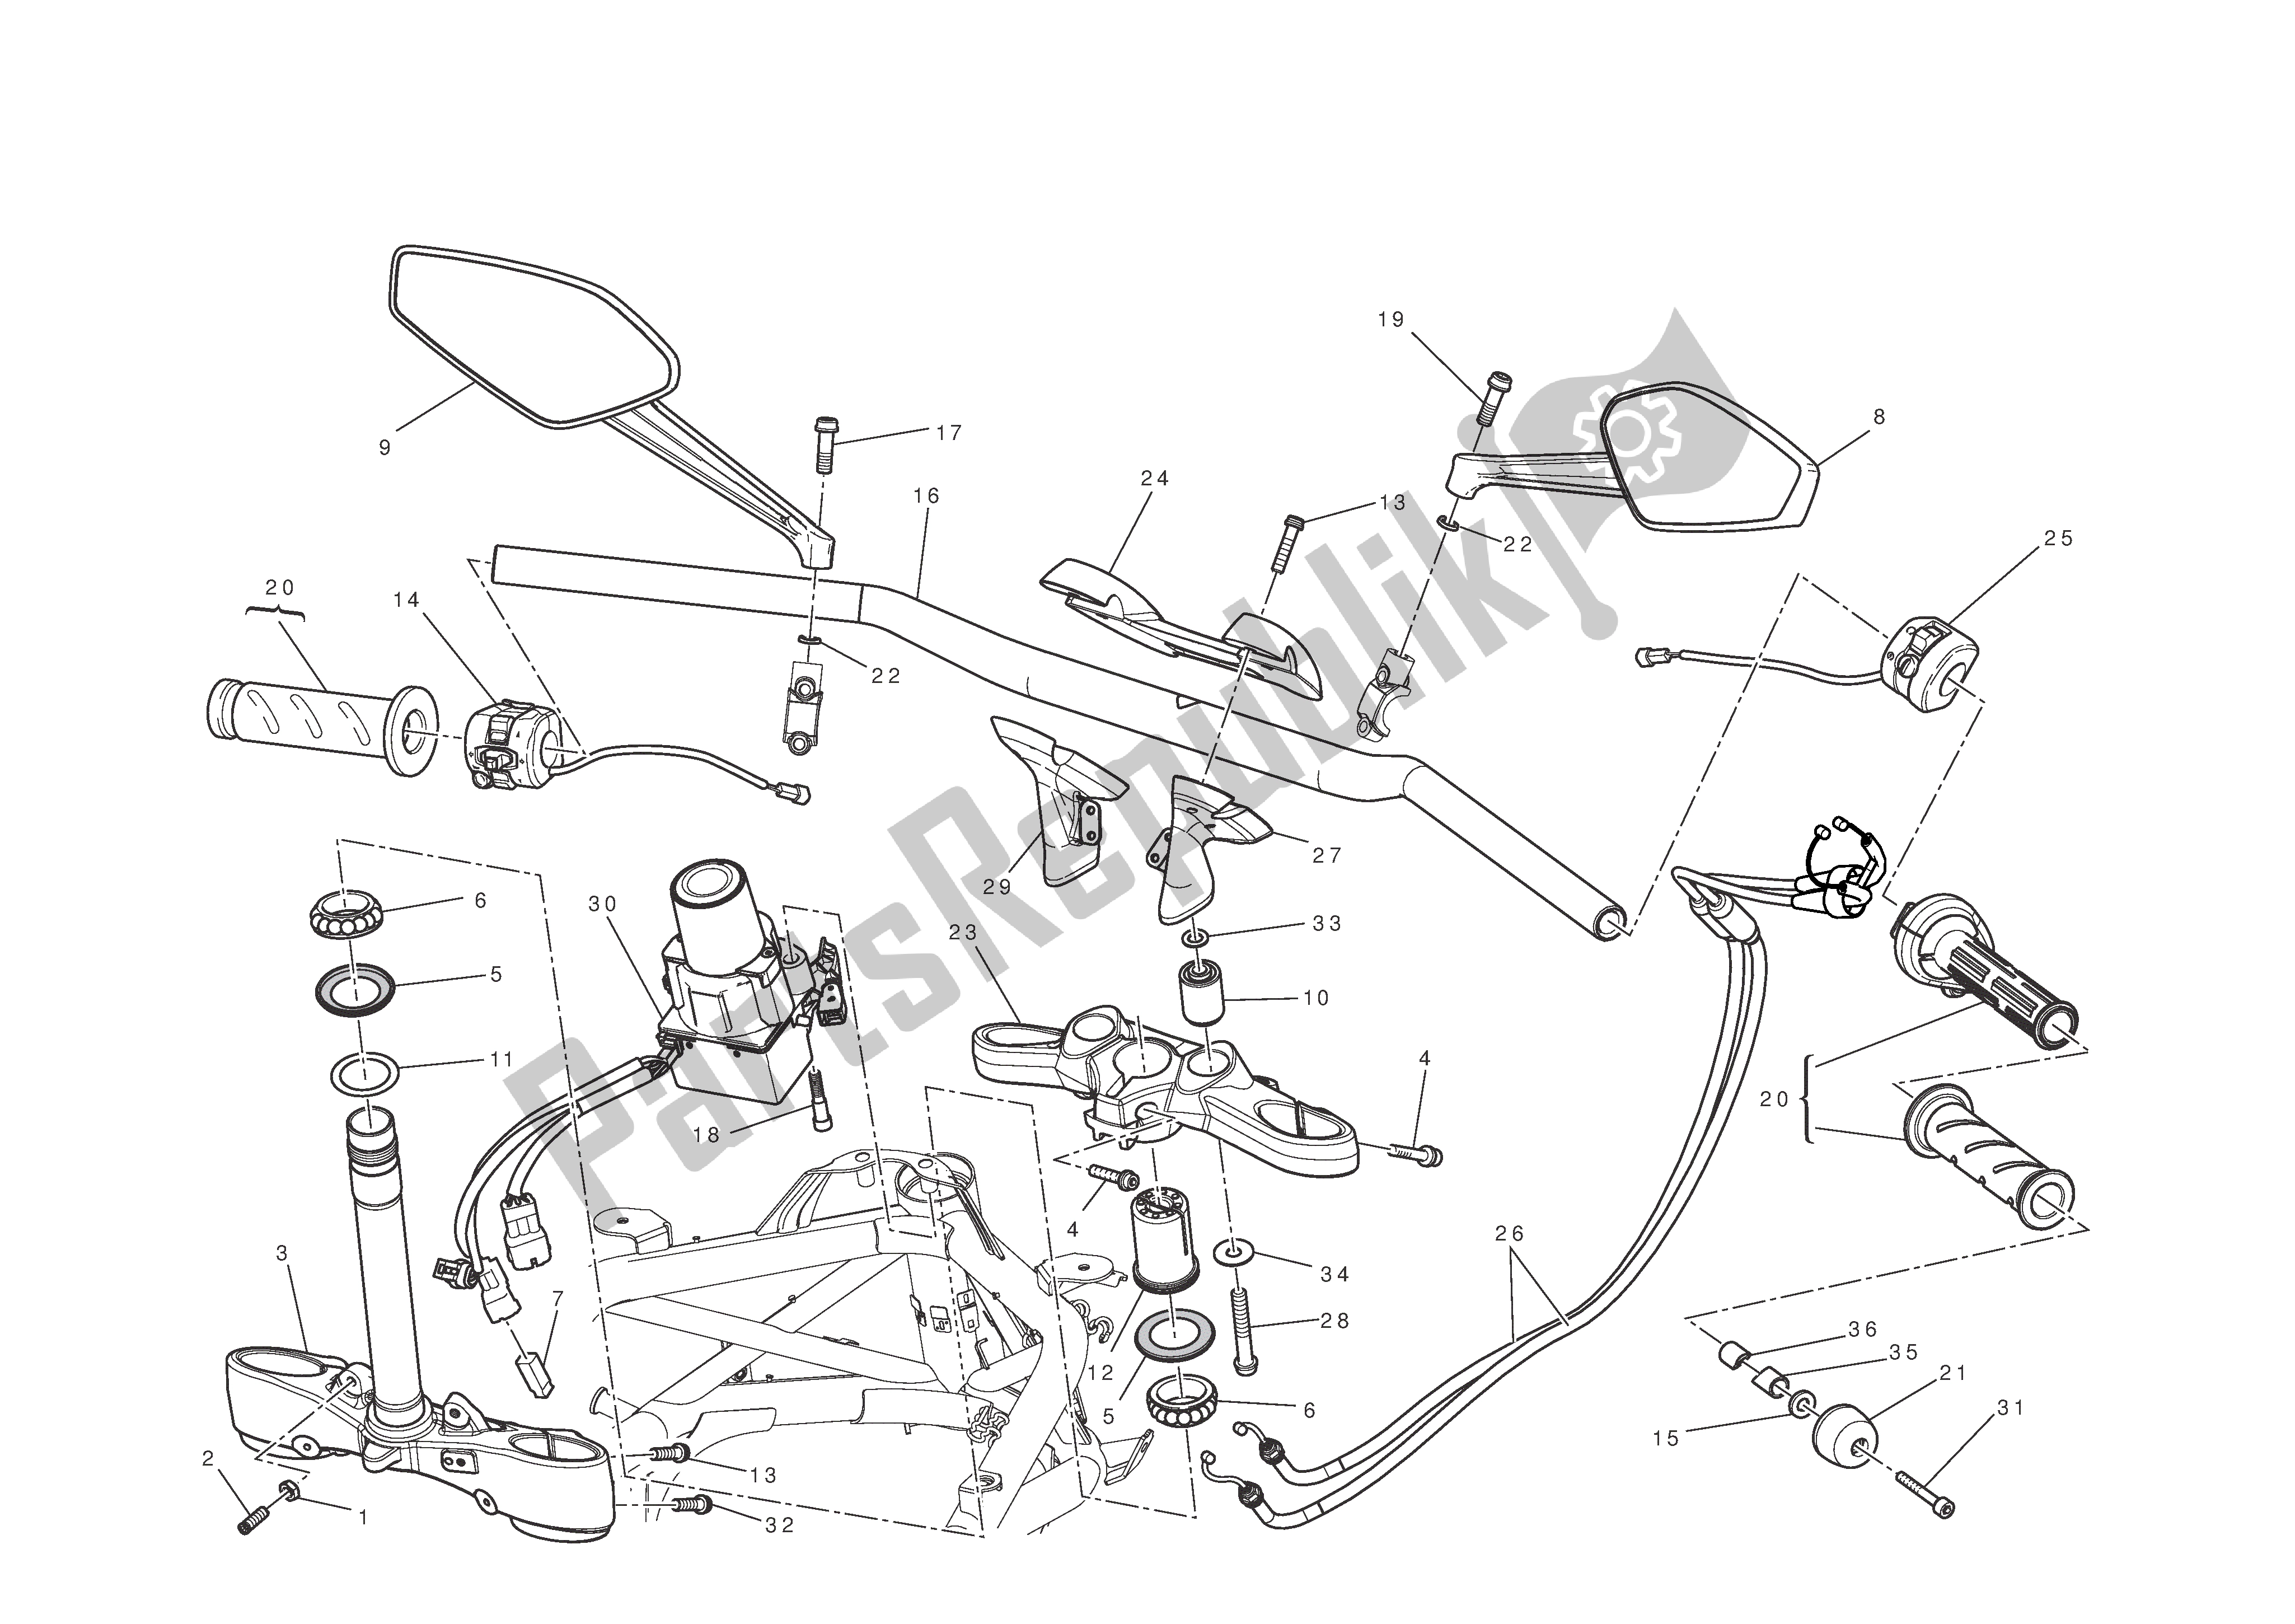 Tutte le parti per il Manubrio E Comandi del Ducati Diavel 1200 2013